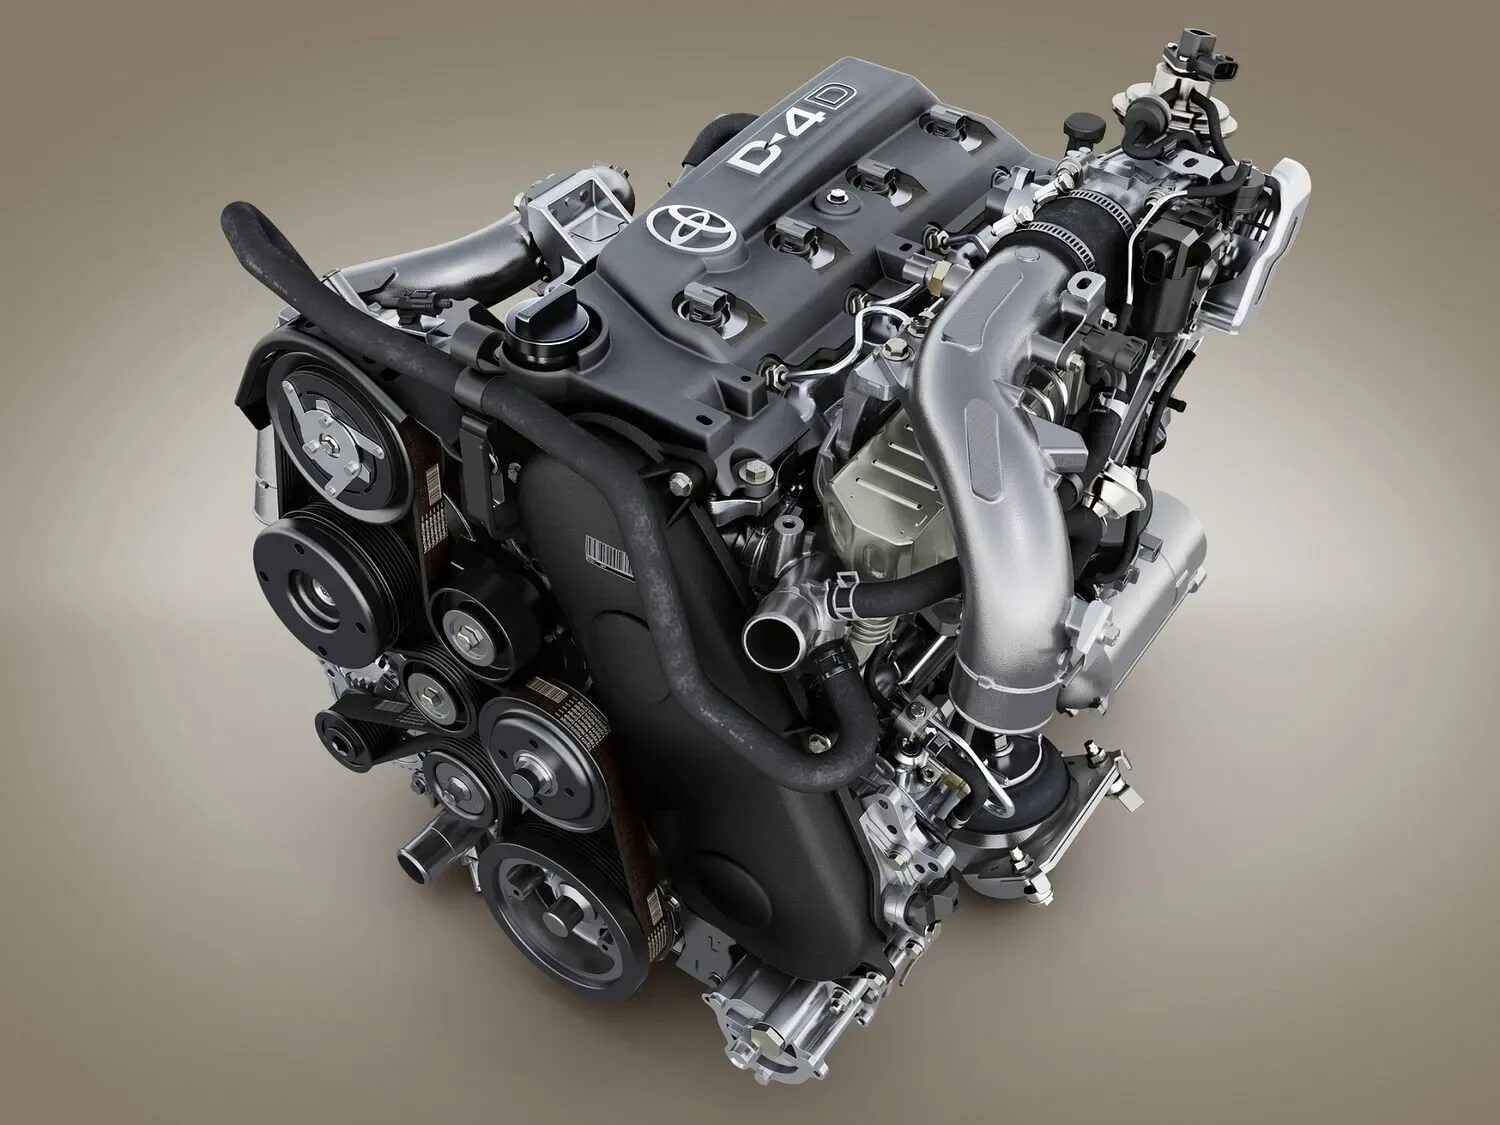 1.3 л 150 л с. Двигатель Тойота 1kd-FTV. 1kd FTV двигатель. Двигатель 1kd-FTV 3.0 дизель. Тойота Прадо 150 дизель 3.0.